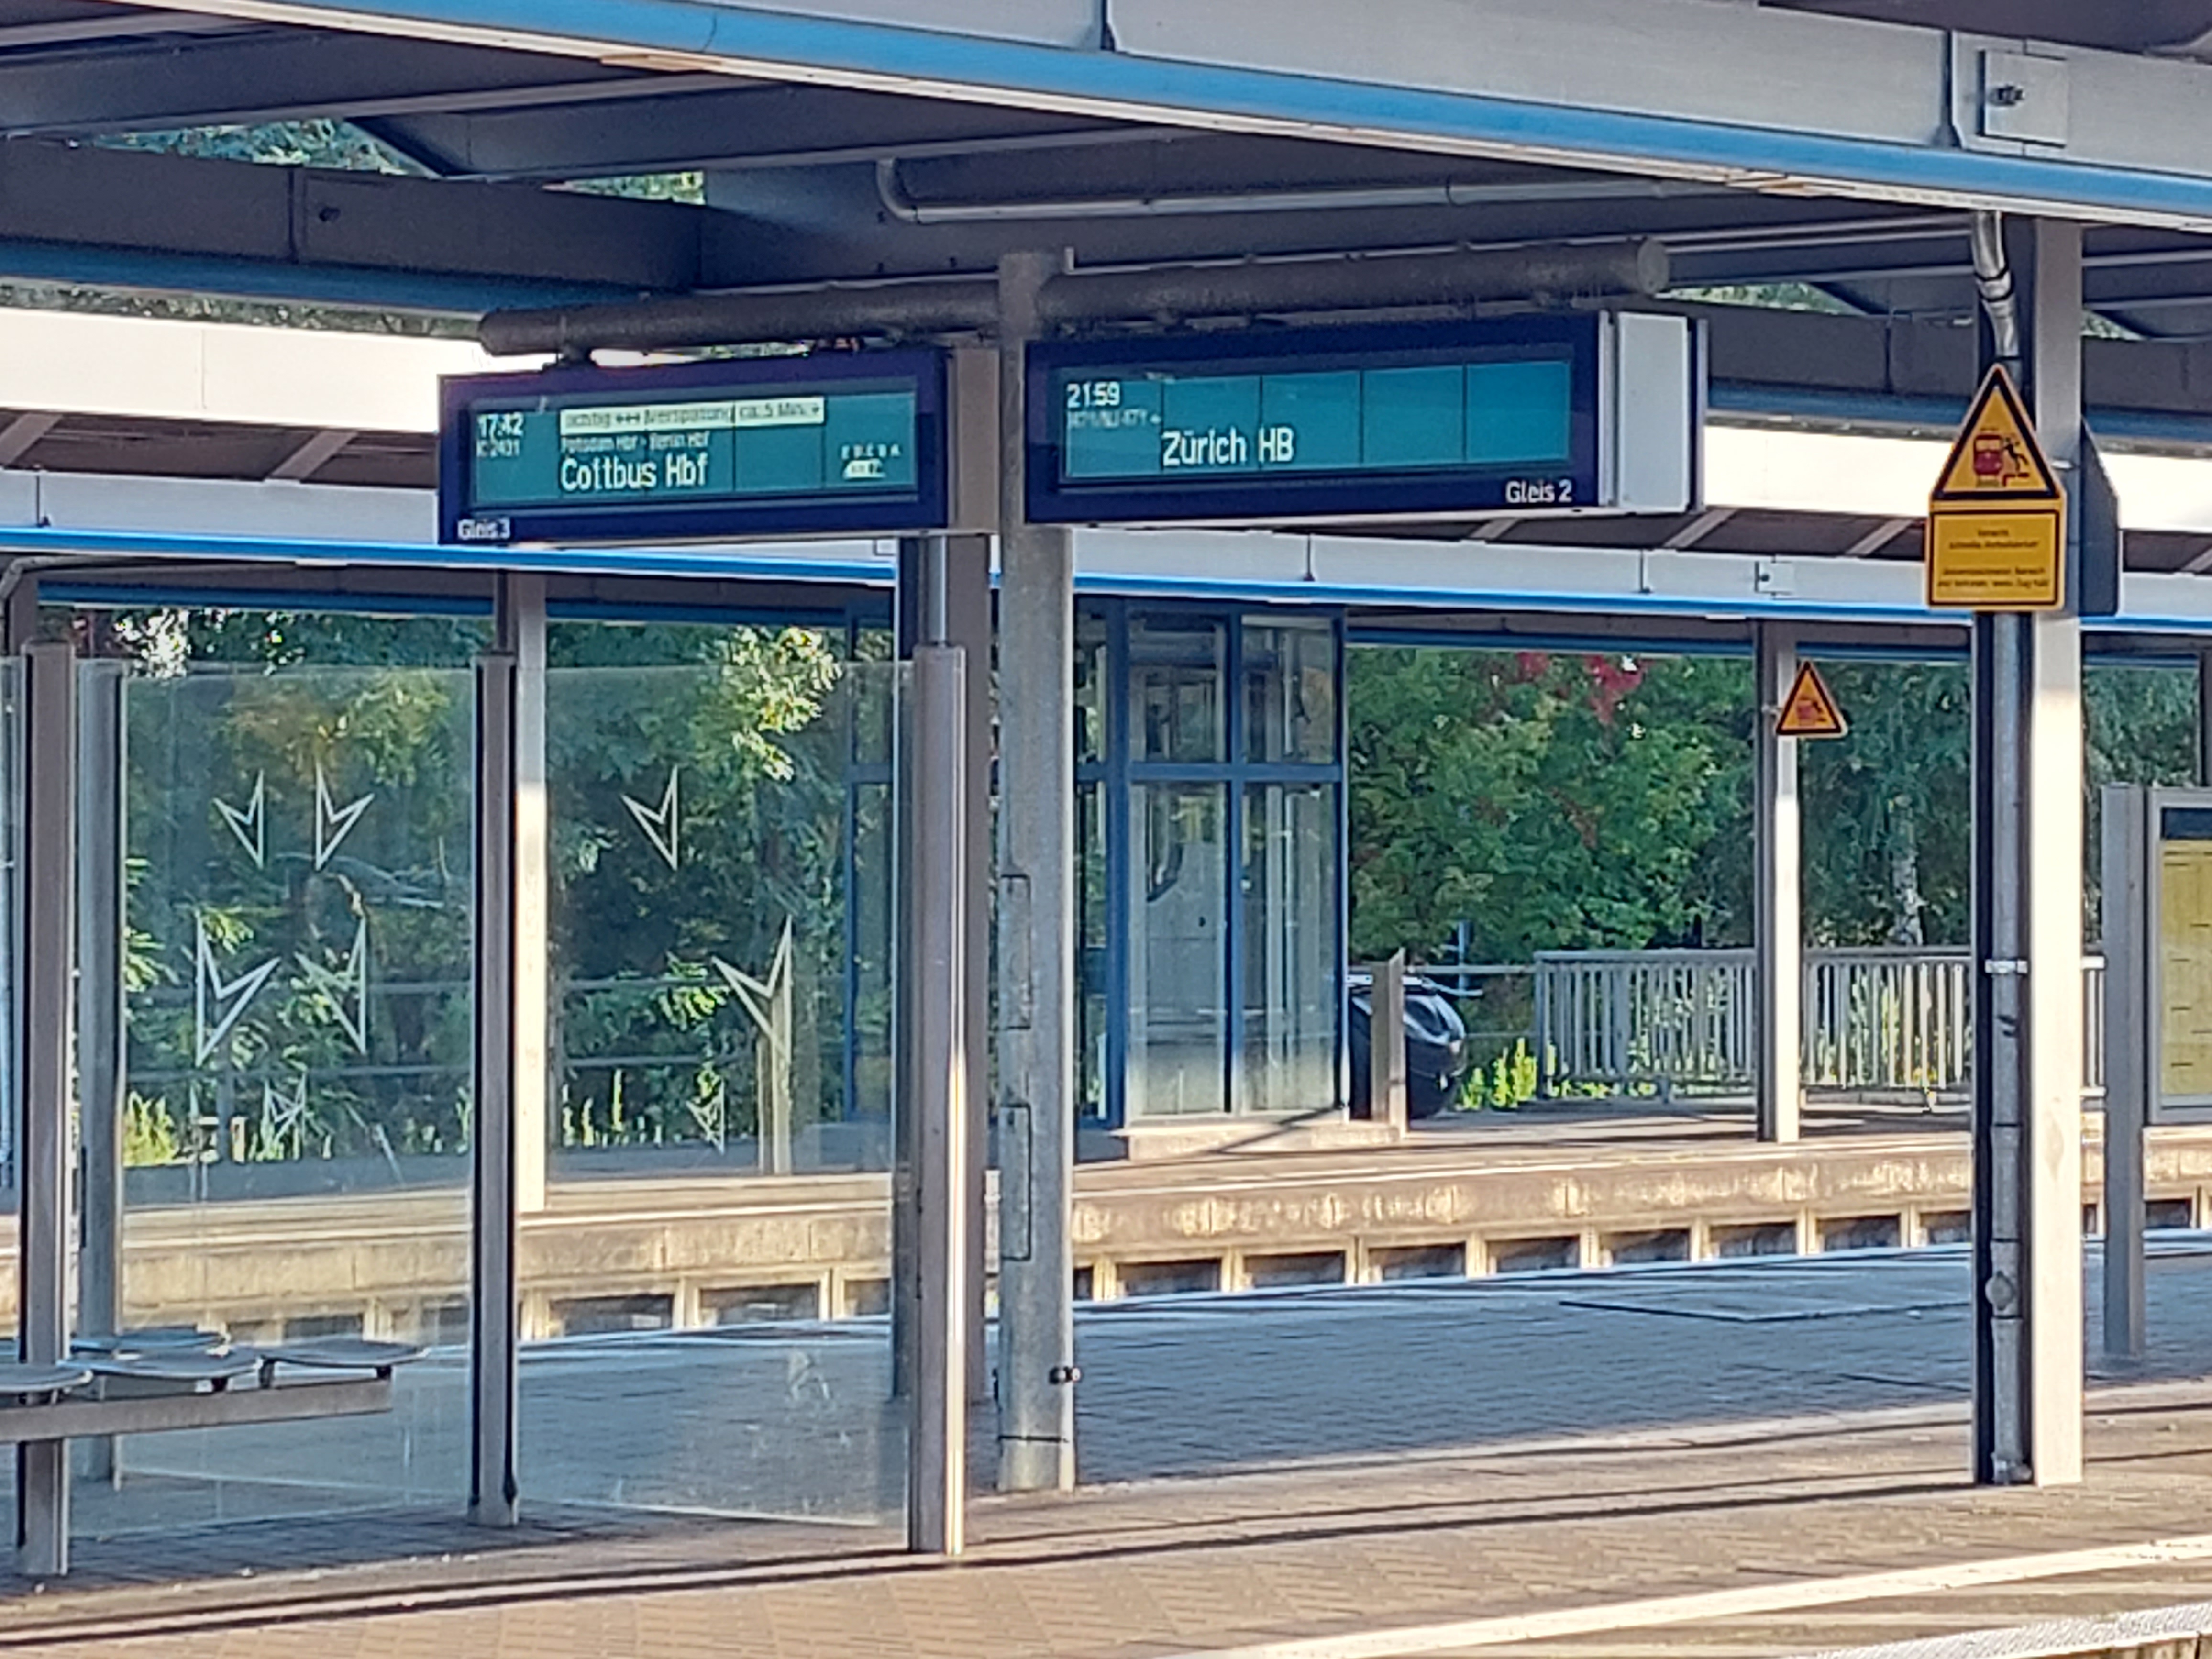 Anzeige an Gleis 2 zeigt Nightjet mit Ziel Zürich HB